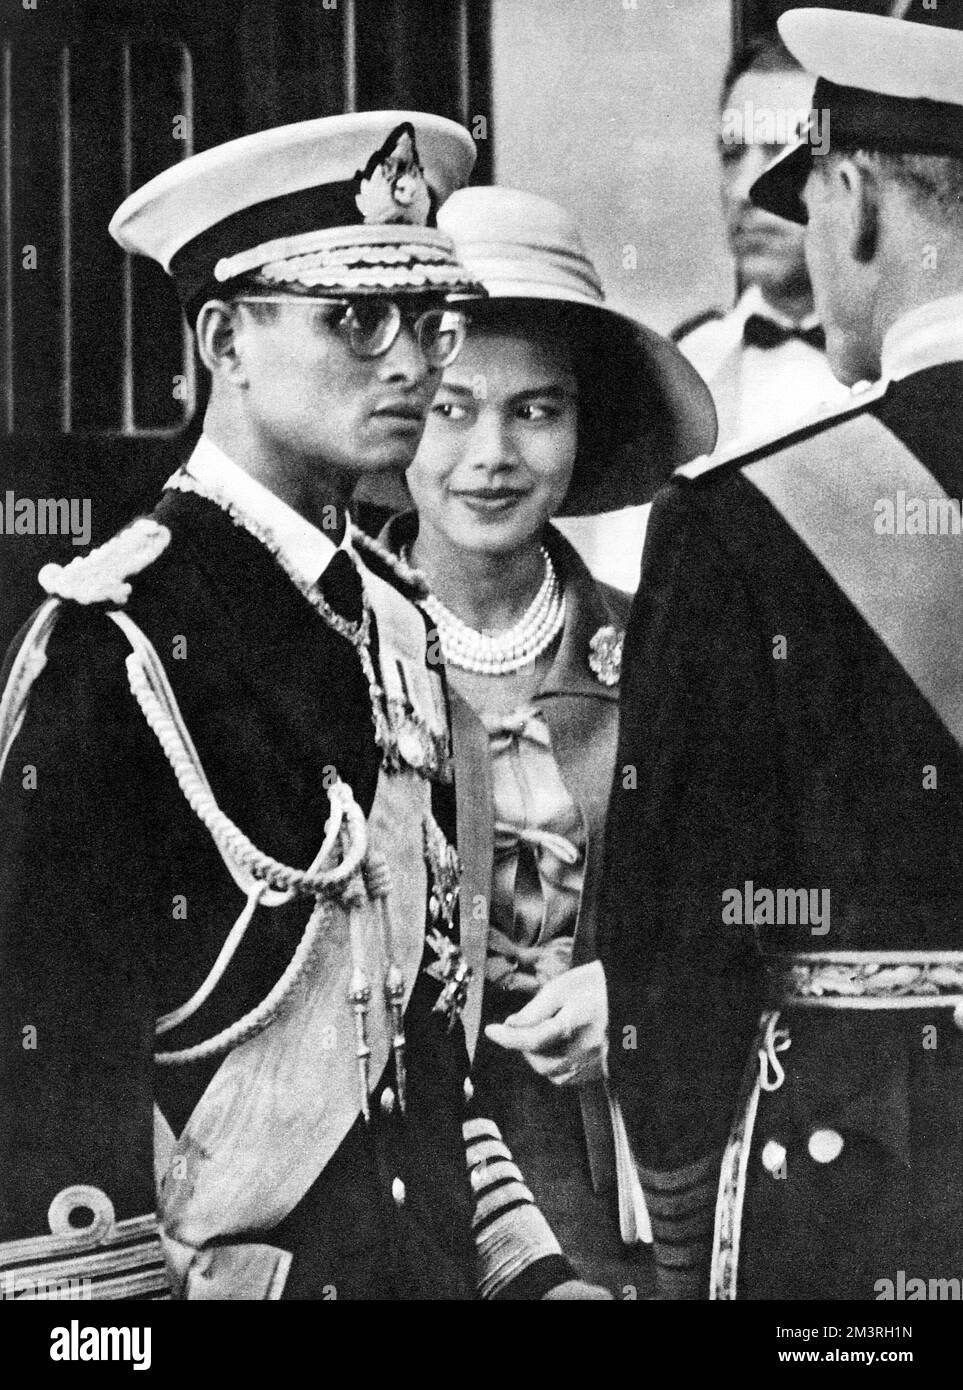 Une visite officielle de deux jours au Royaume-Uni par le roi Bhumibol Adulyadej (Rama IX) (1927-) et la reine Sirikit (1932-) de Thaïlande - à la gare Victoria en conversation avec le duc d'Édimbourg. Date: 1960 Banque D'Images